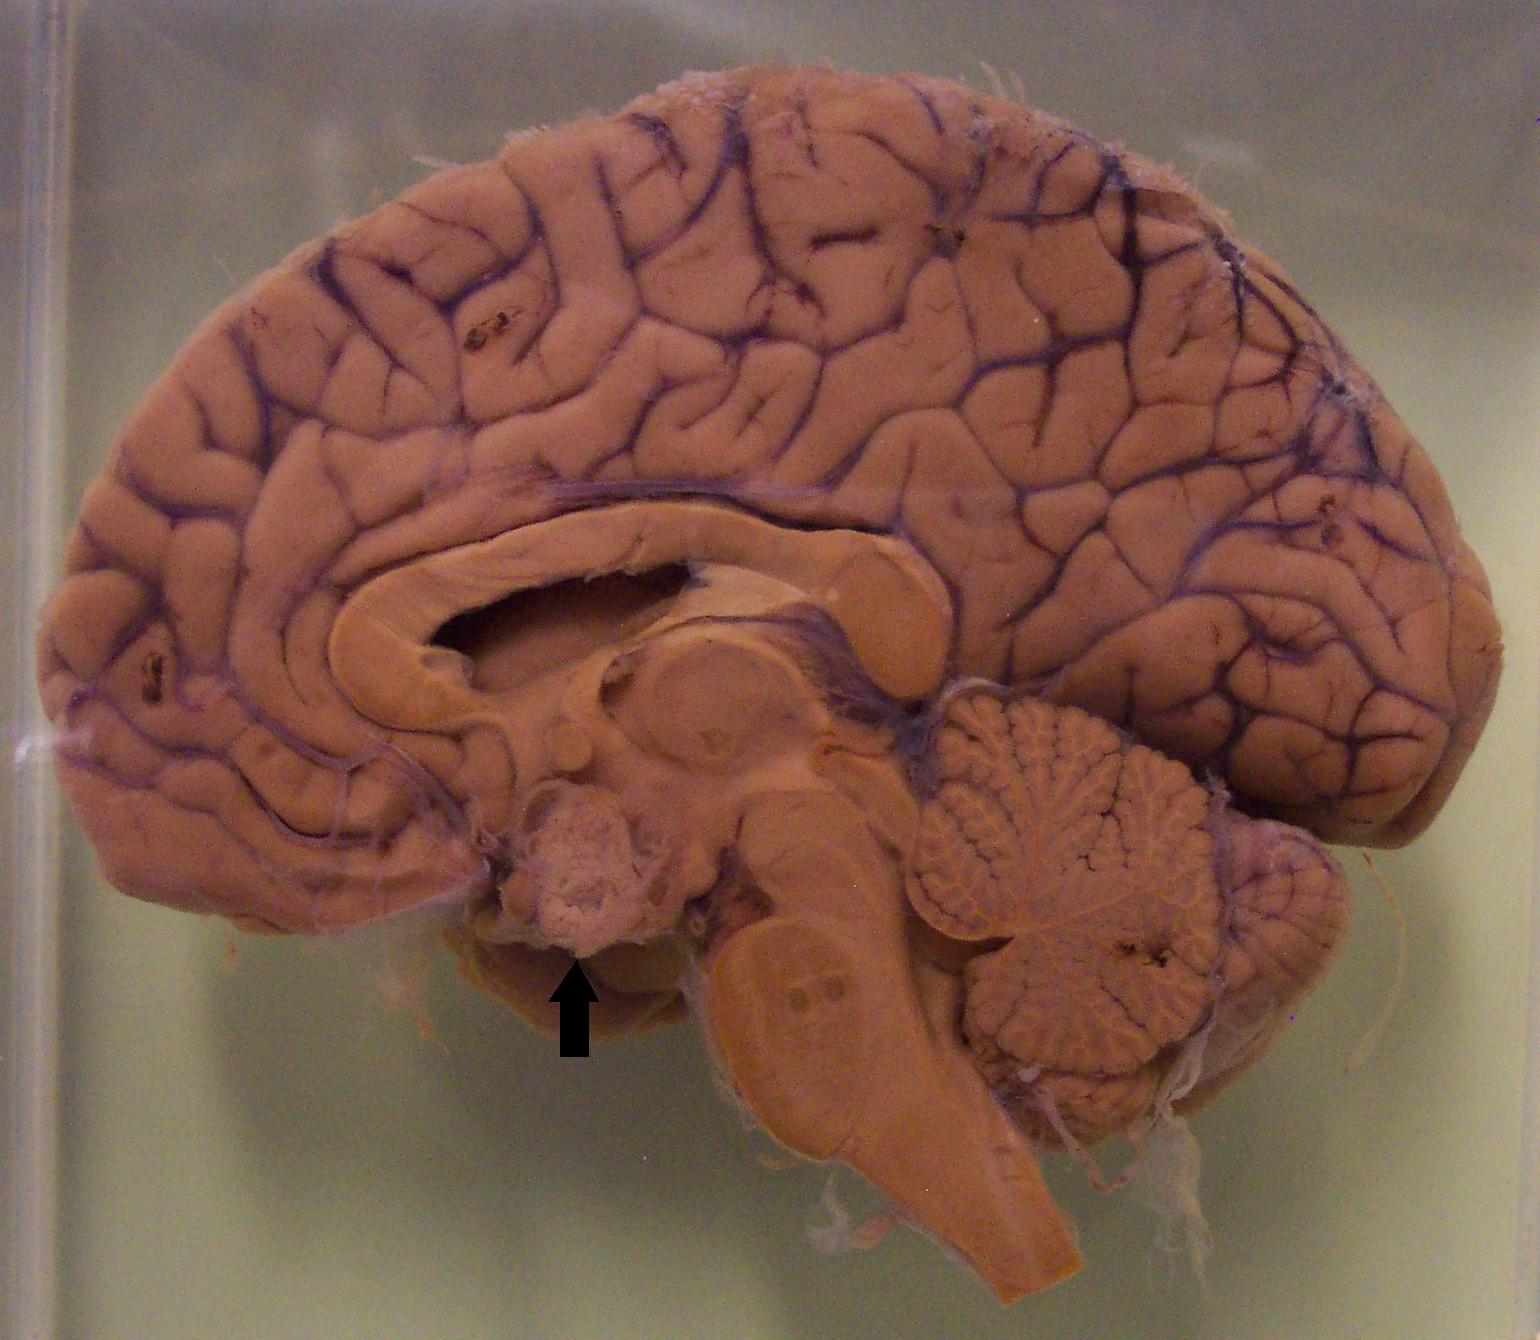 A craniopharyngioma